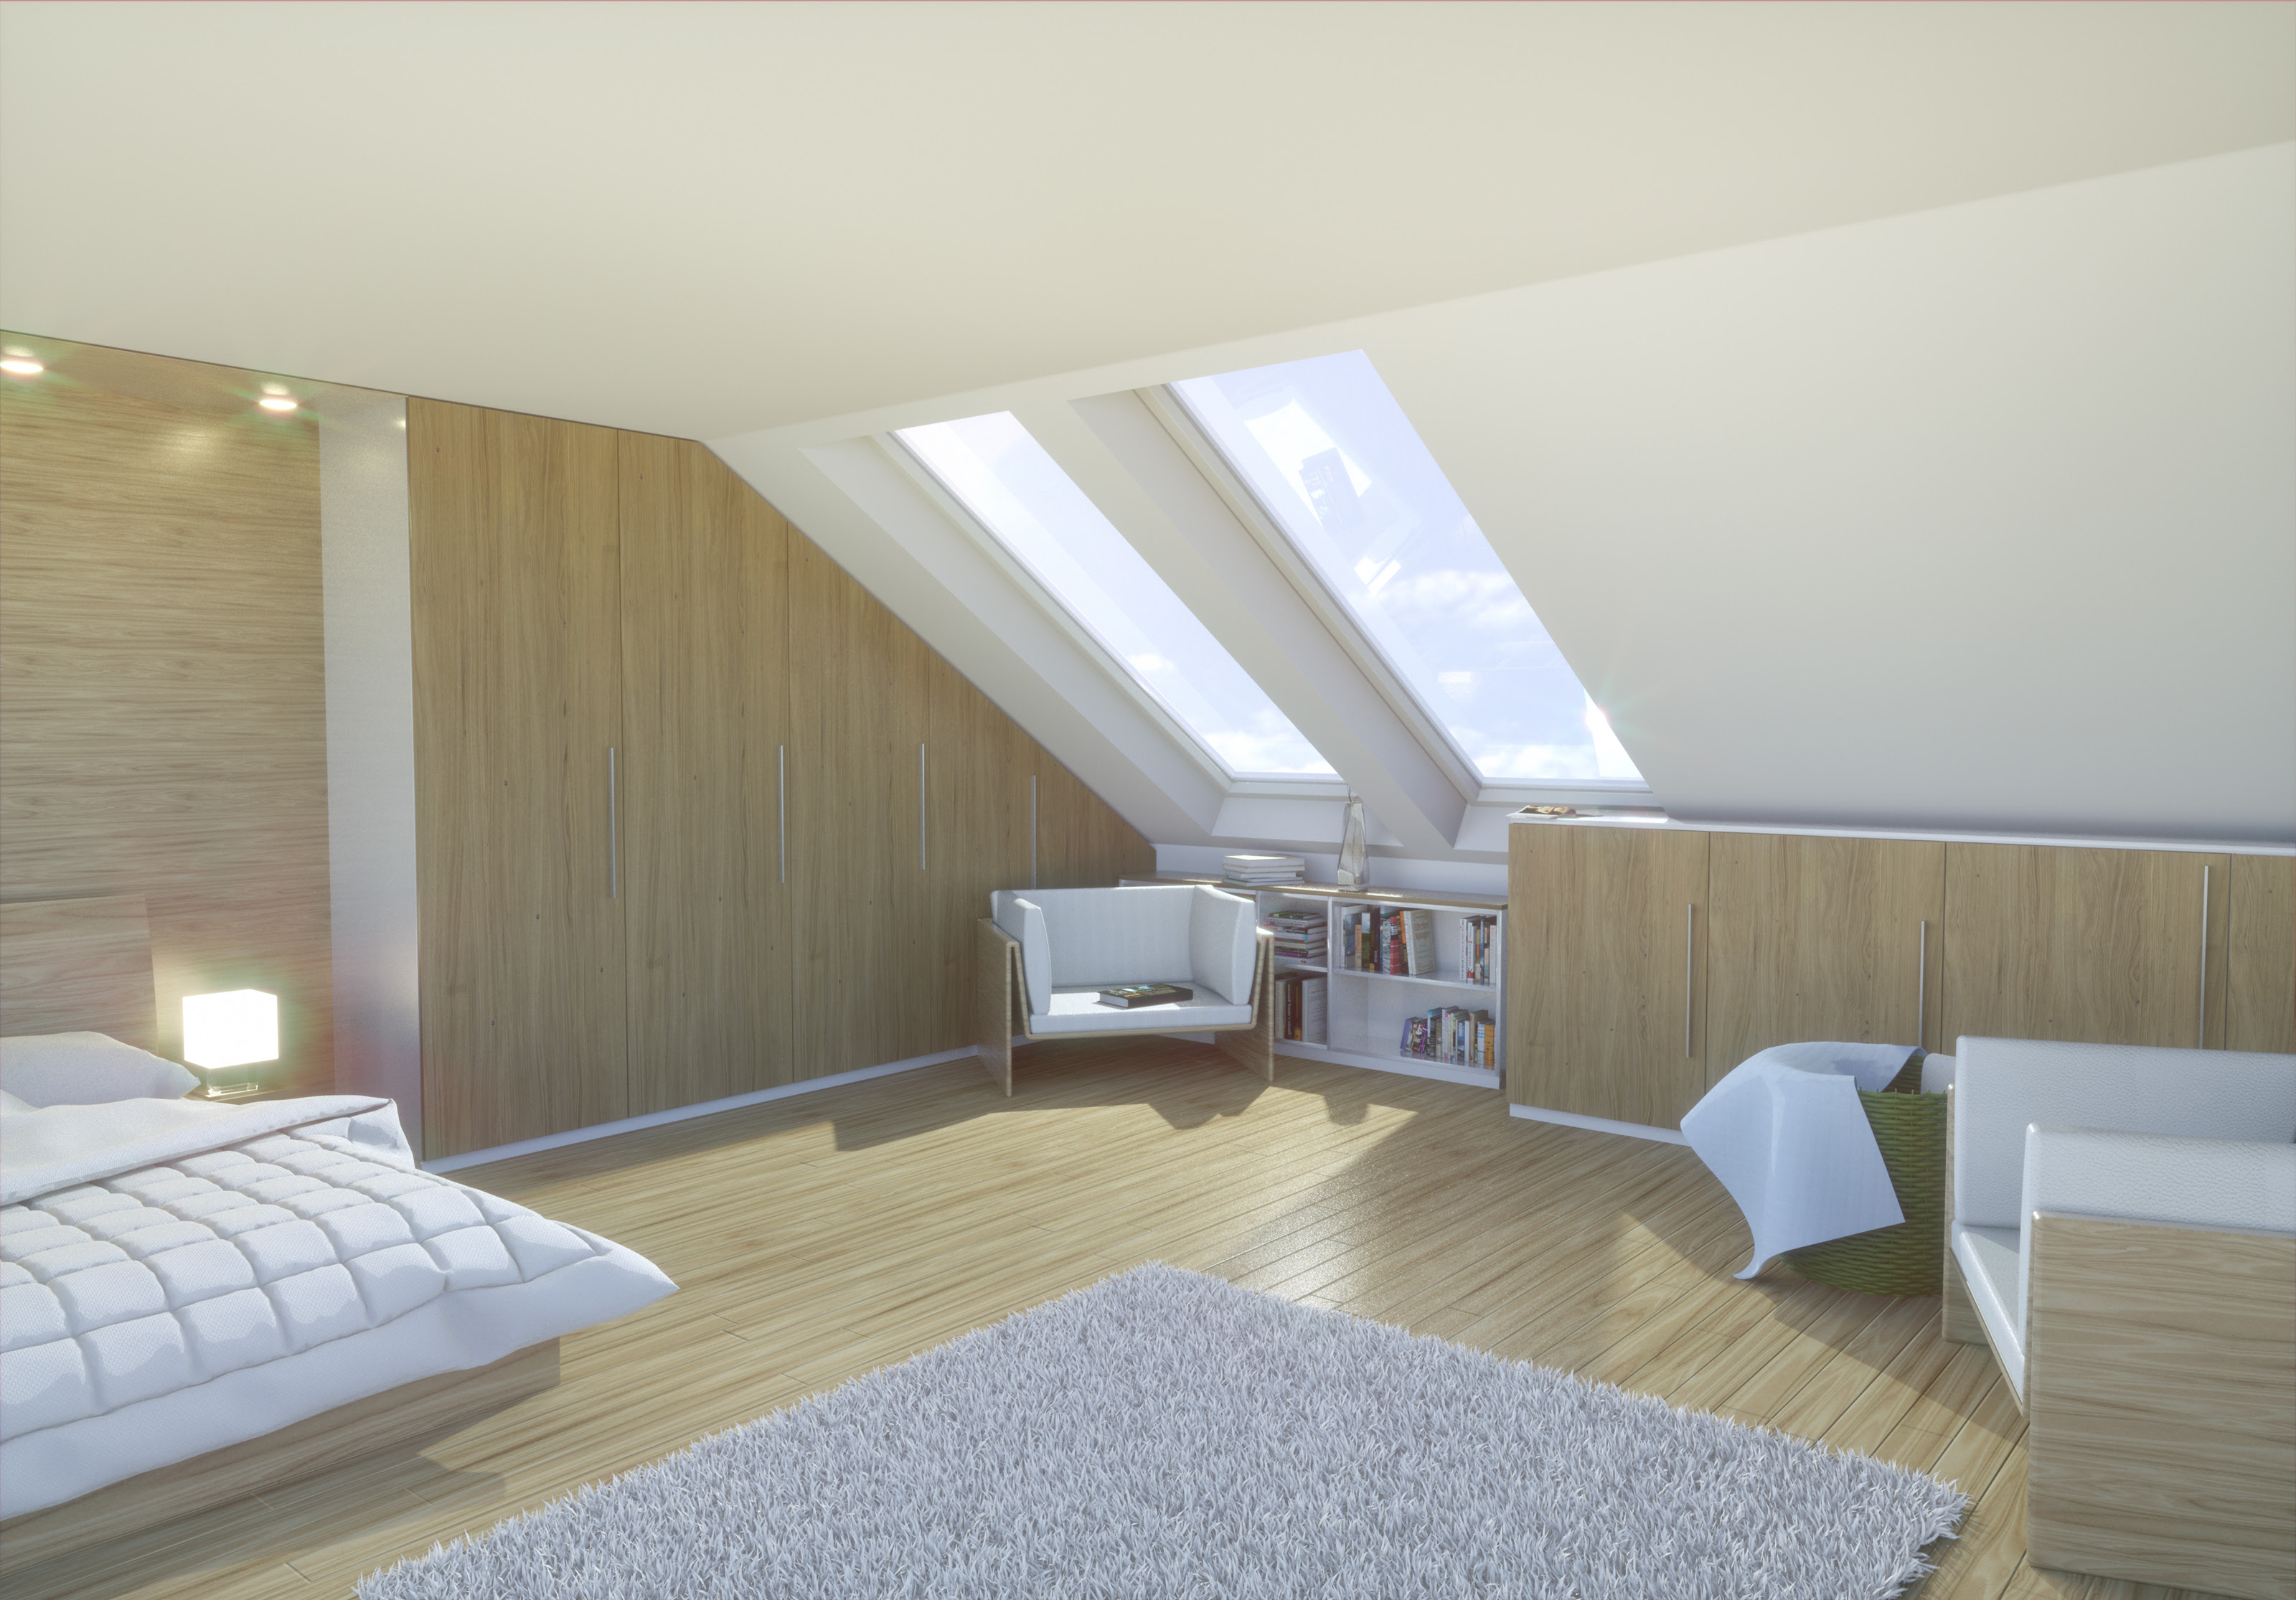 Schlafzimmer Unterm Dach | Luxus: Der Traum Vieler Frauen ...